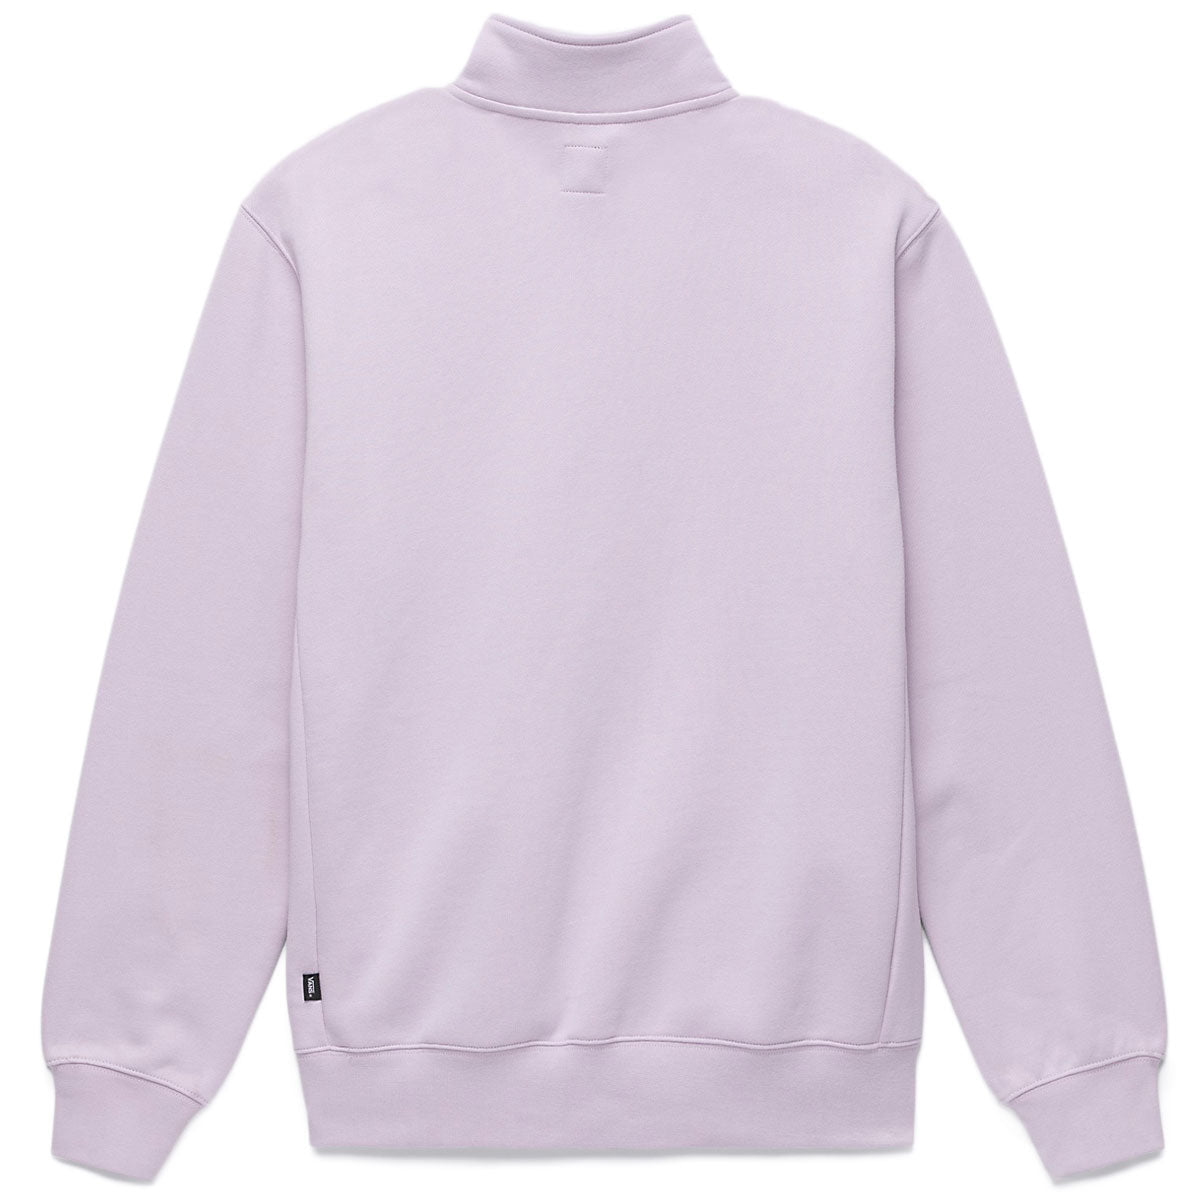 Vans Pocket Q Zip Sweatshirt - Lavender Frost image 3